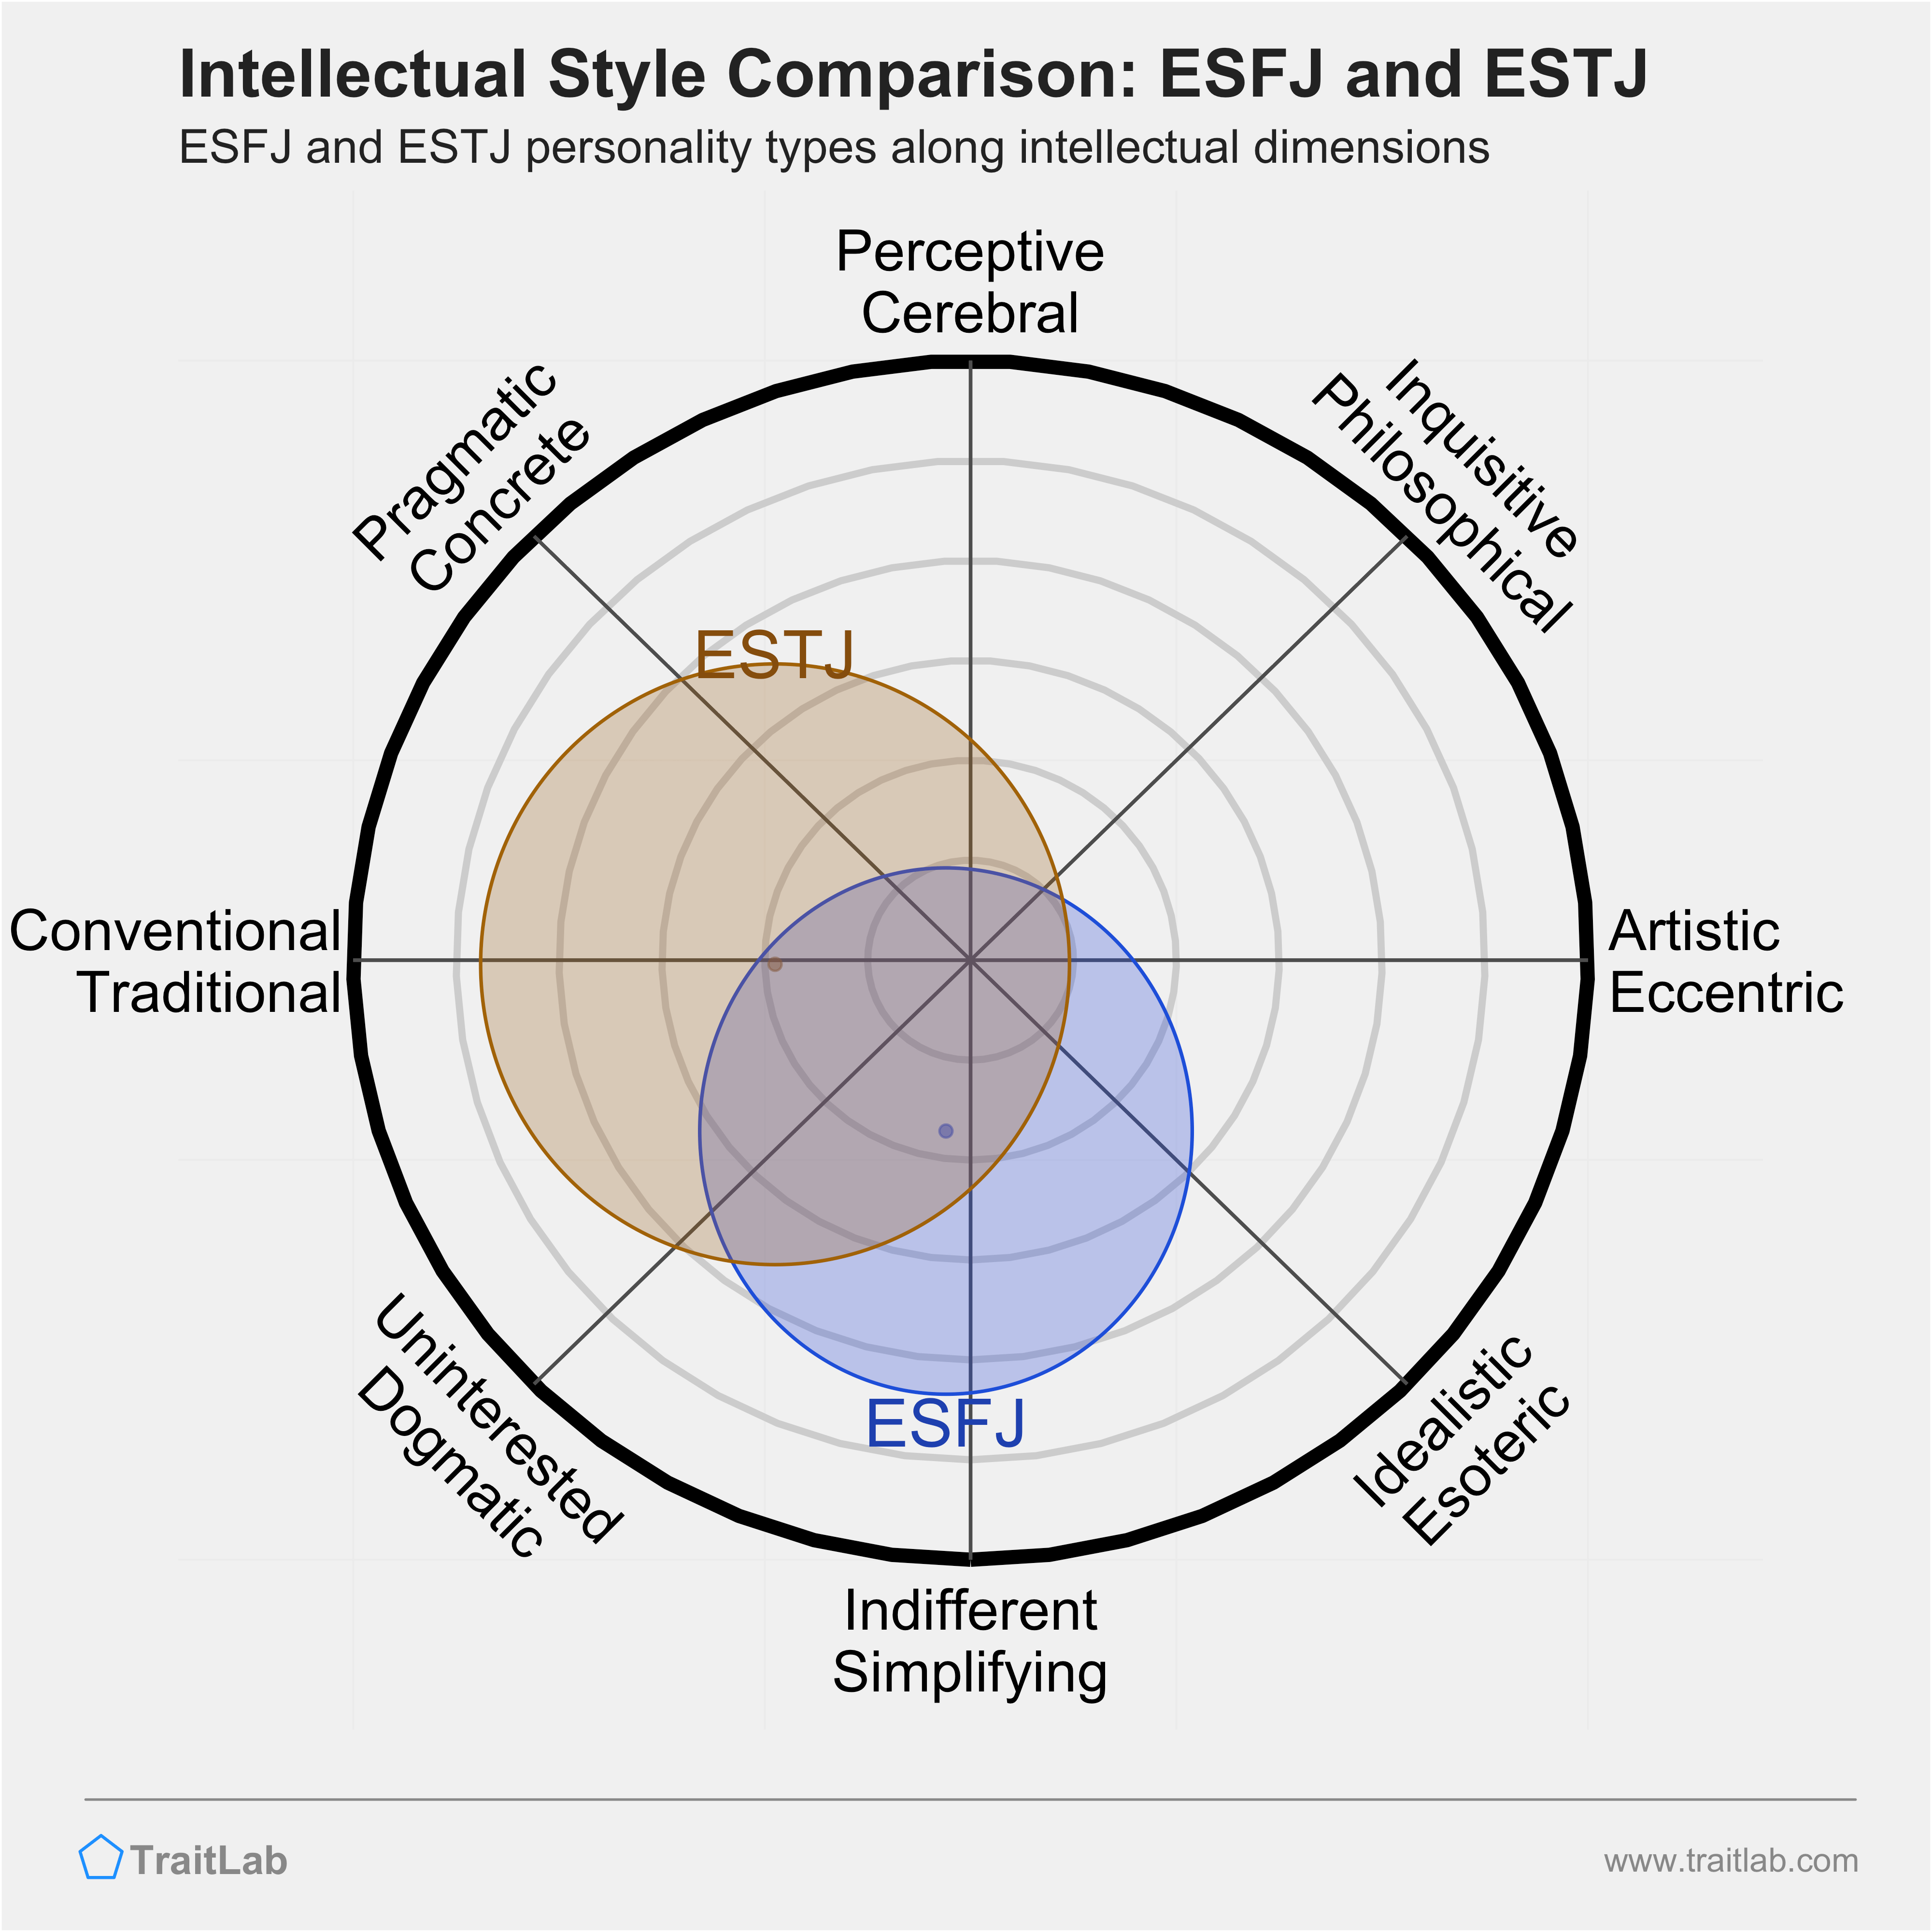 ESFJ and ESTJ comparison across intellectual dimensions